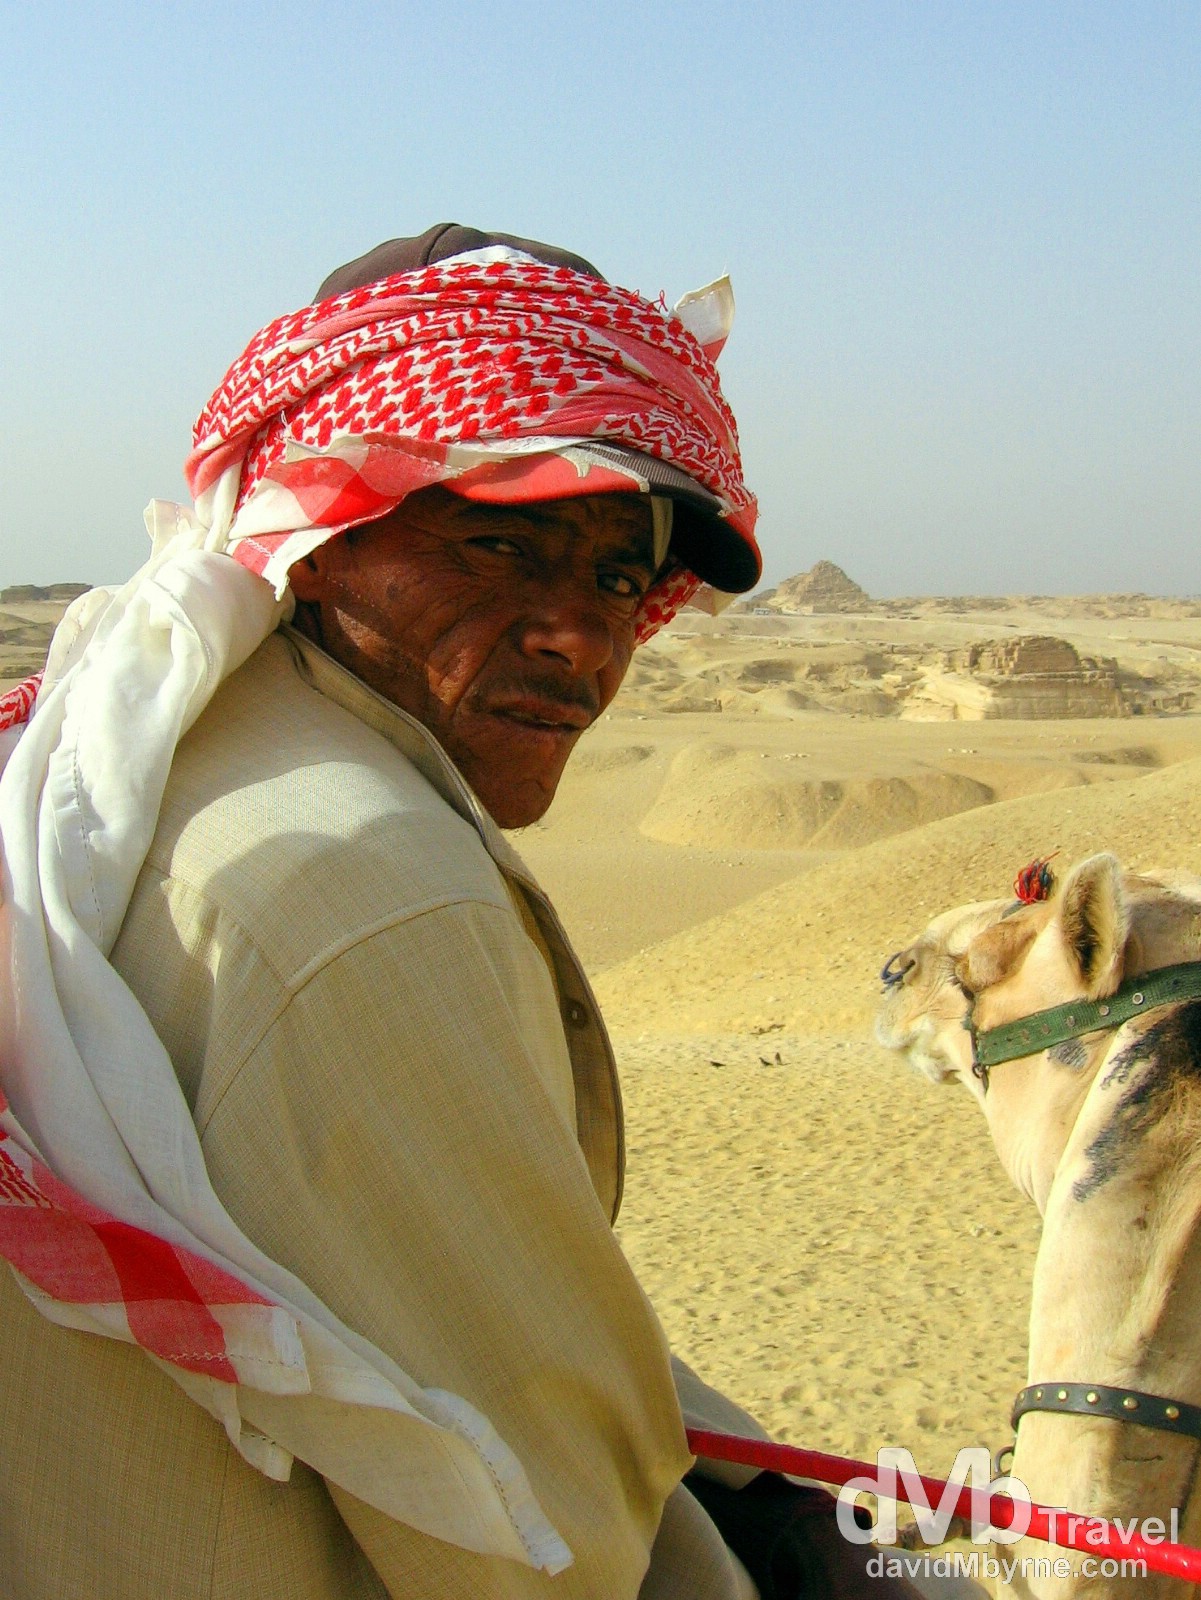 A Bedouin camel herder on the Giza Plateau, Giza, Egypt. April 13, 2008.